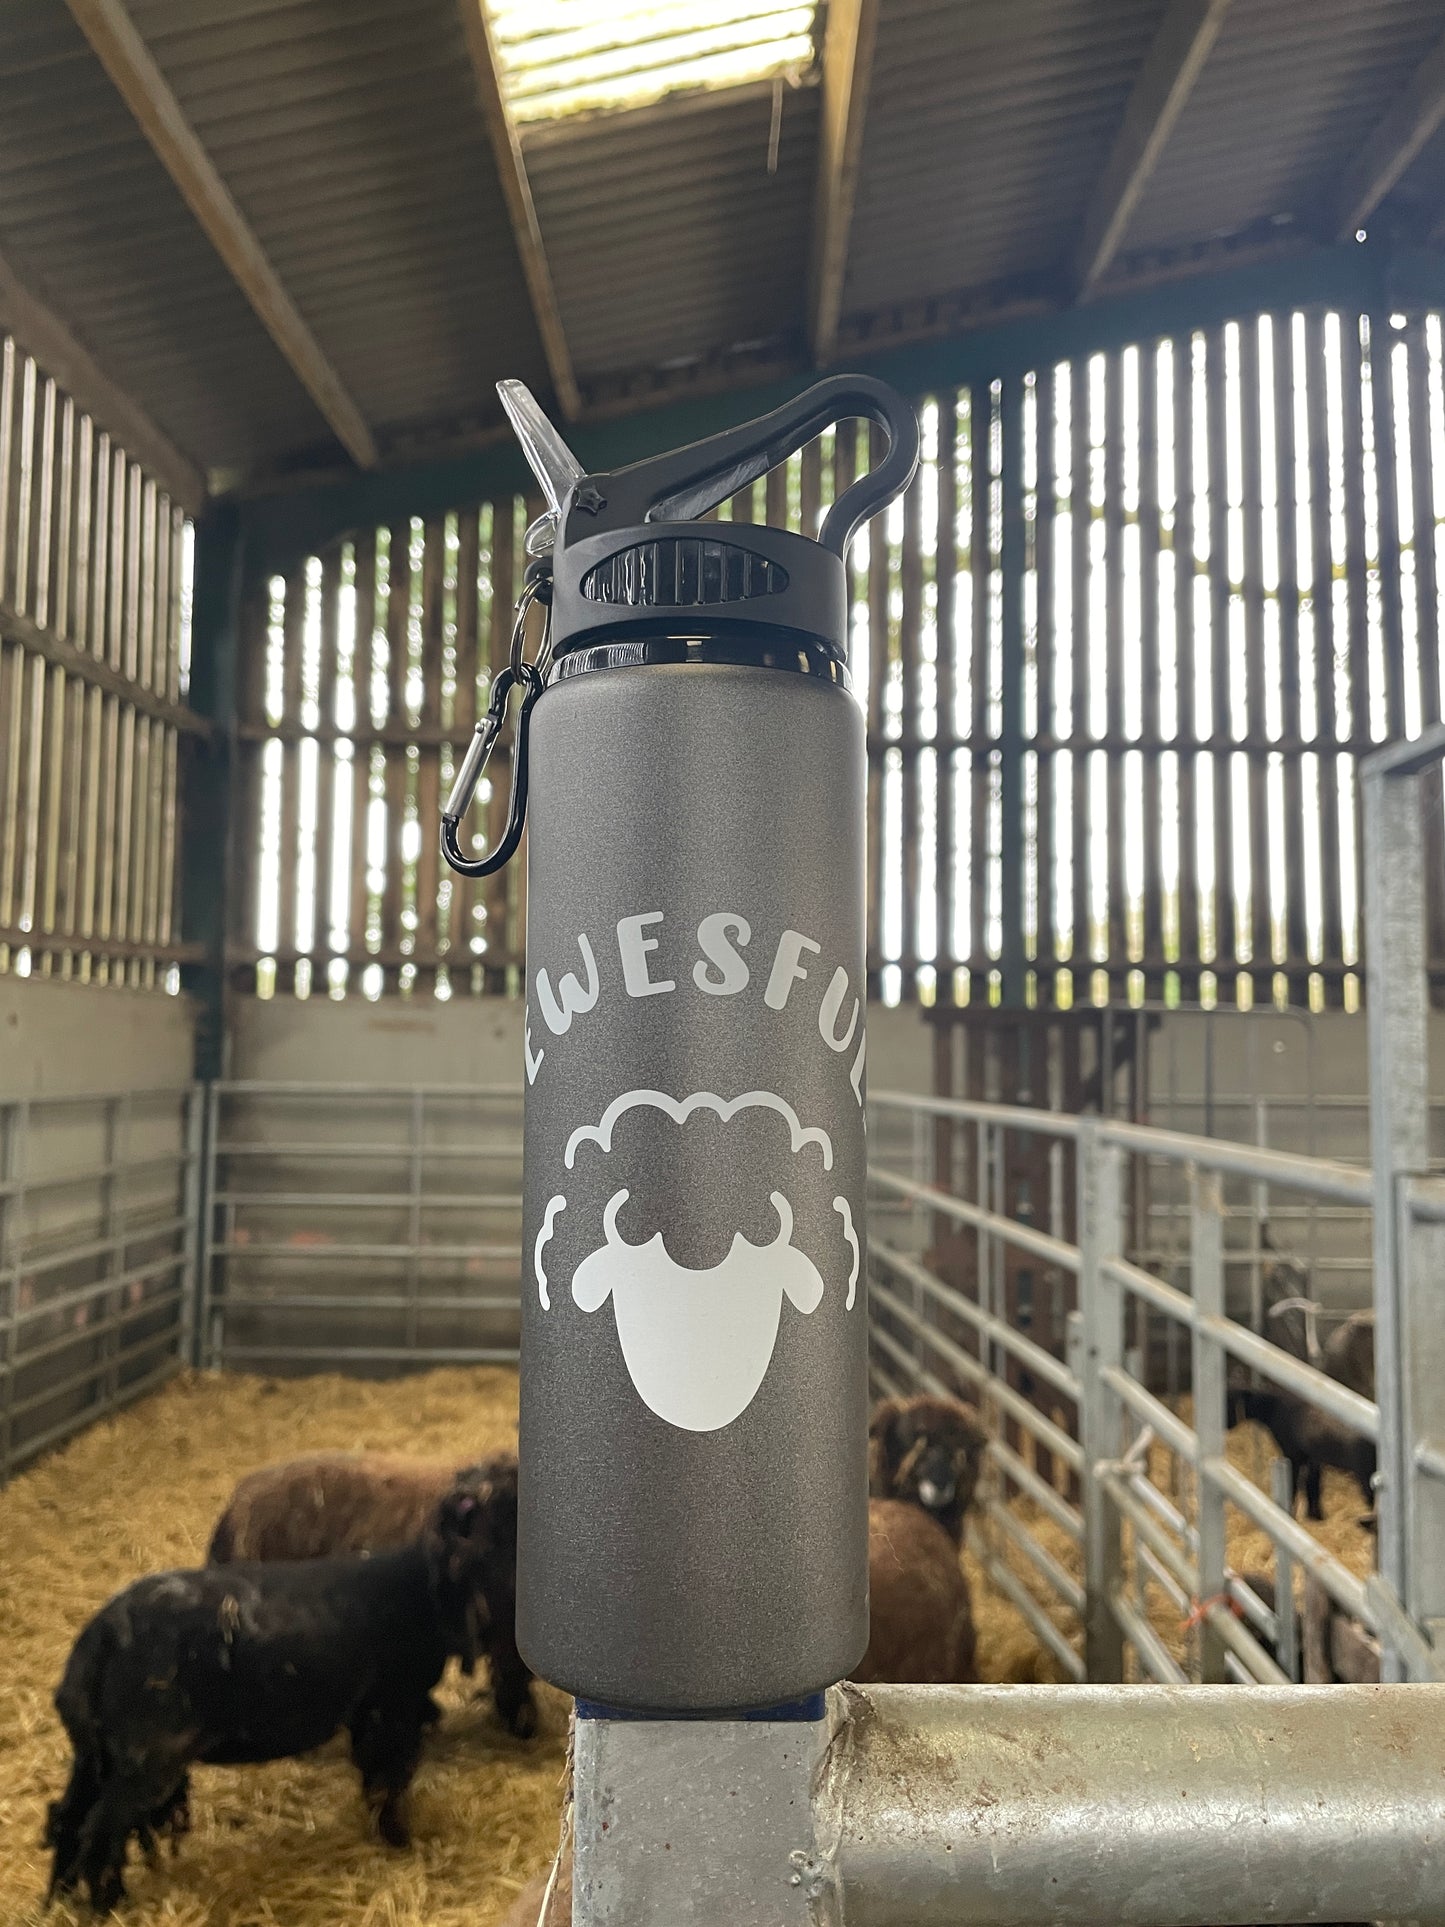 Sheep Logo 800ml Water Bottle (Gun Metal Grey)